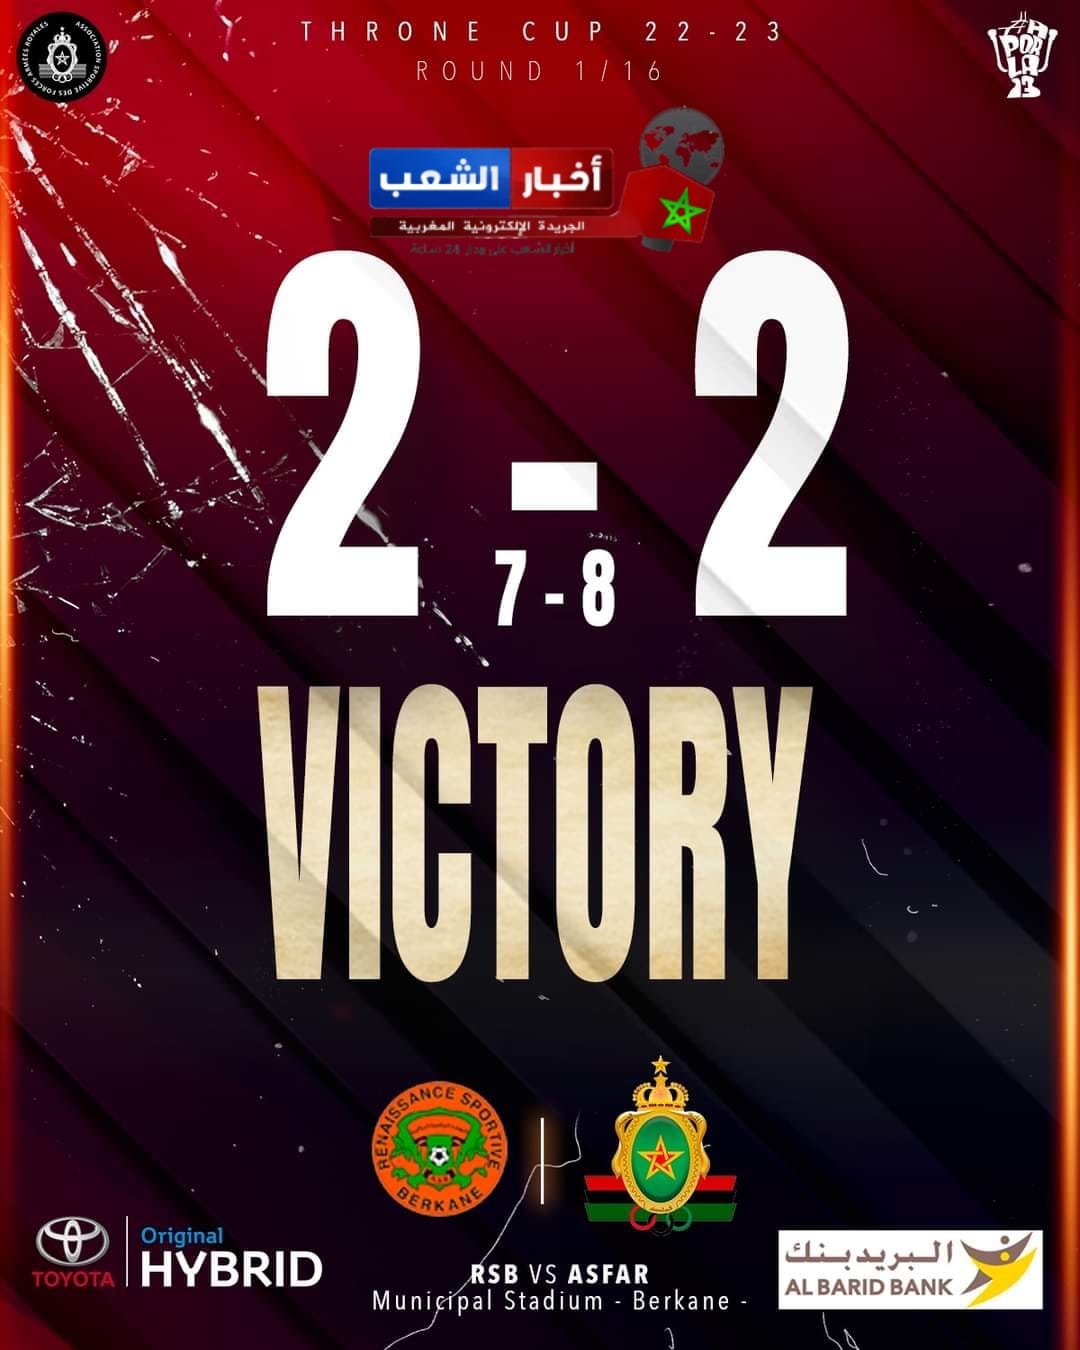 بسيناريو مثير “الزعيم” الجيش الملكي يتأهل إلى دور 16 من منافسات كأس العرش المغربي بضربات الترجيح